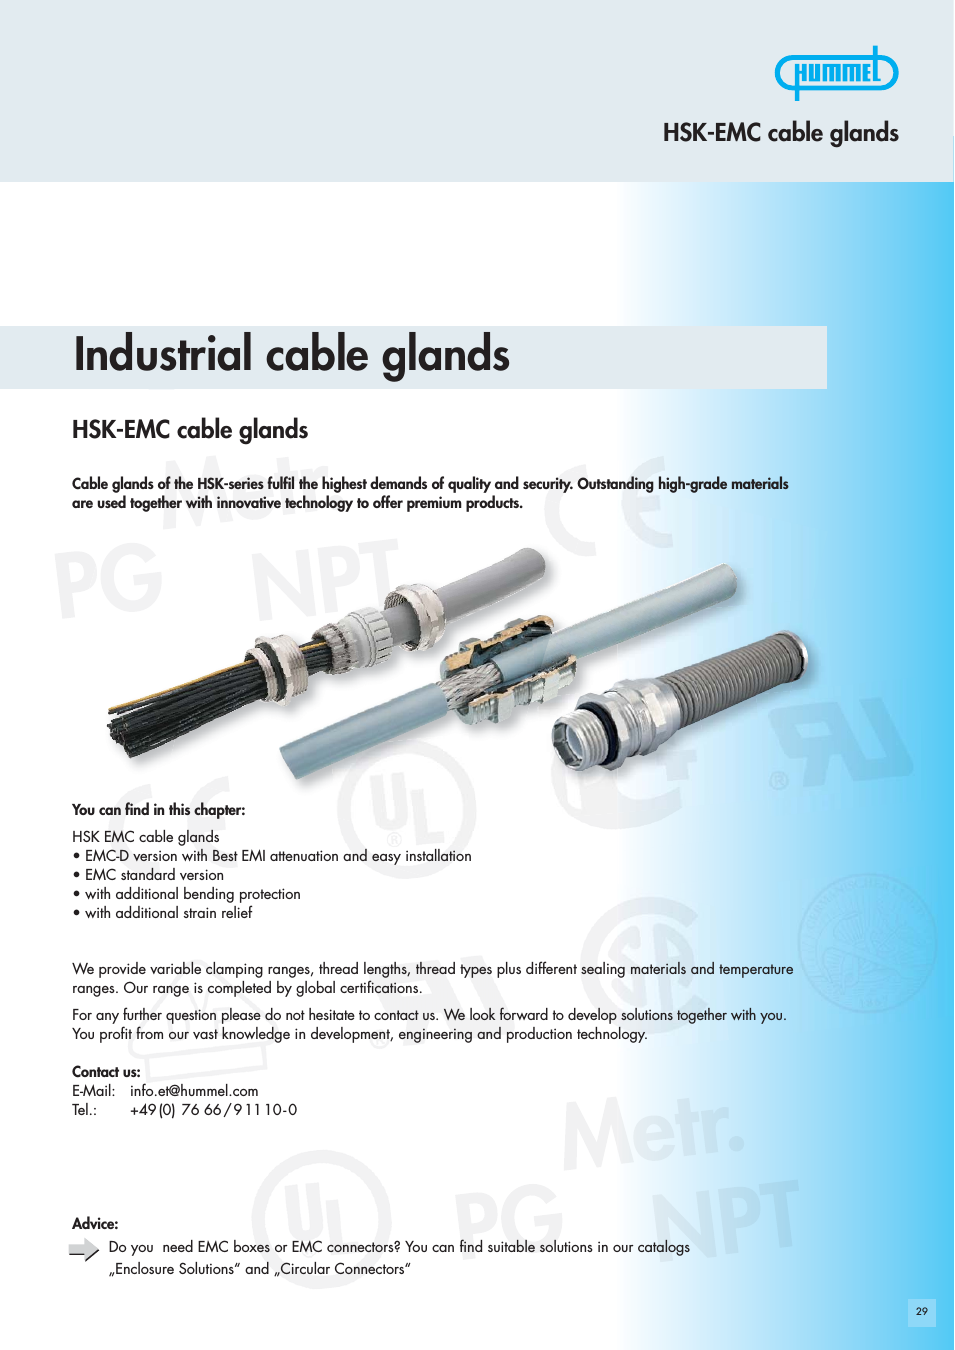 Hummel Cable Glands - EMC (HSK-EMC)